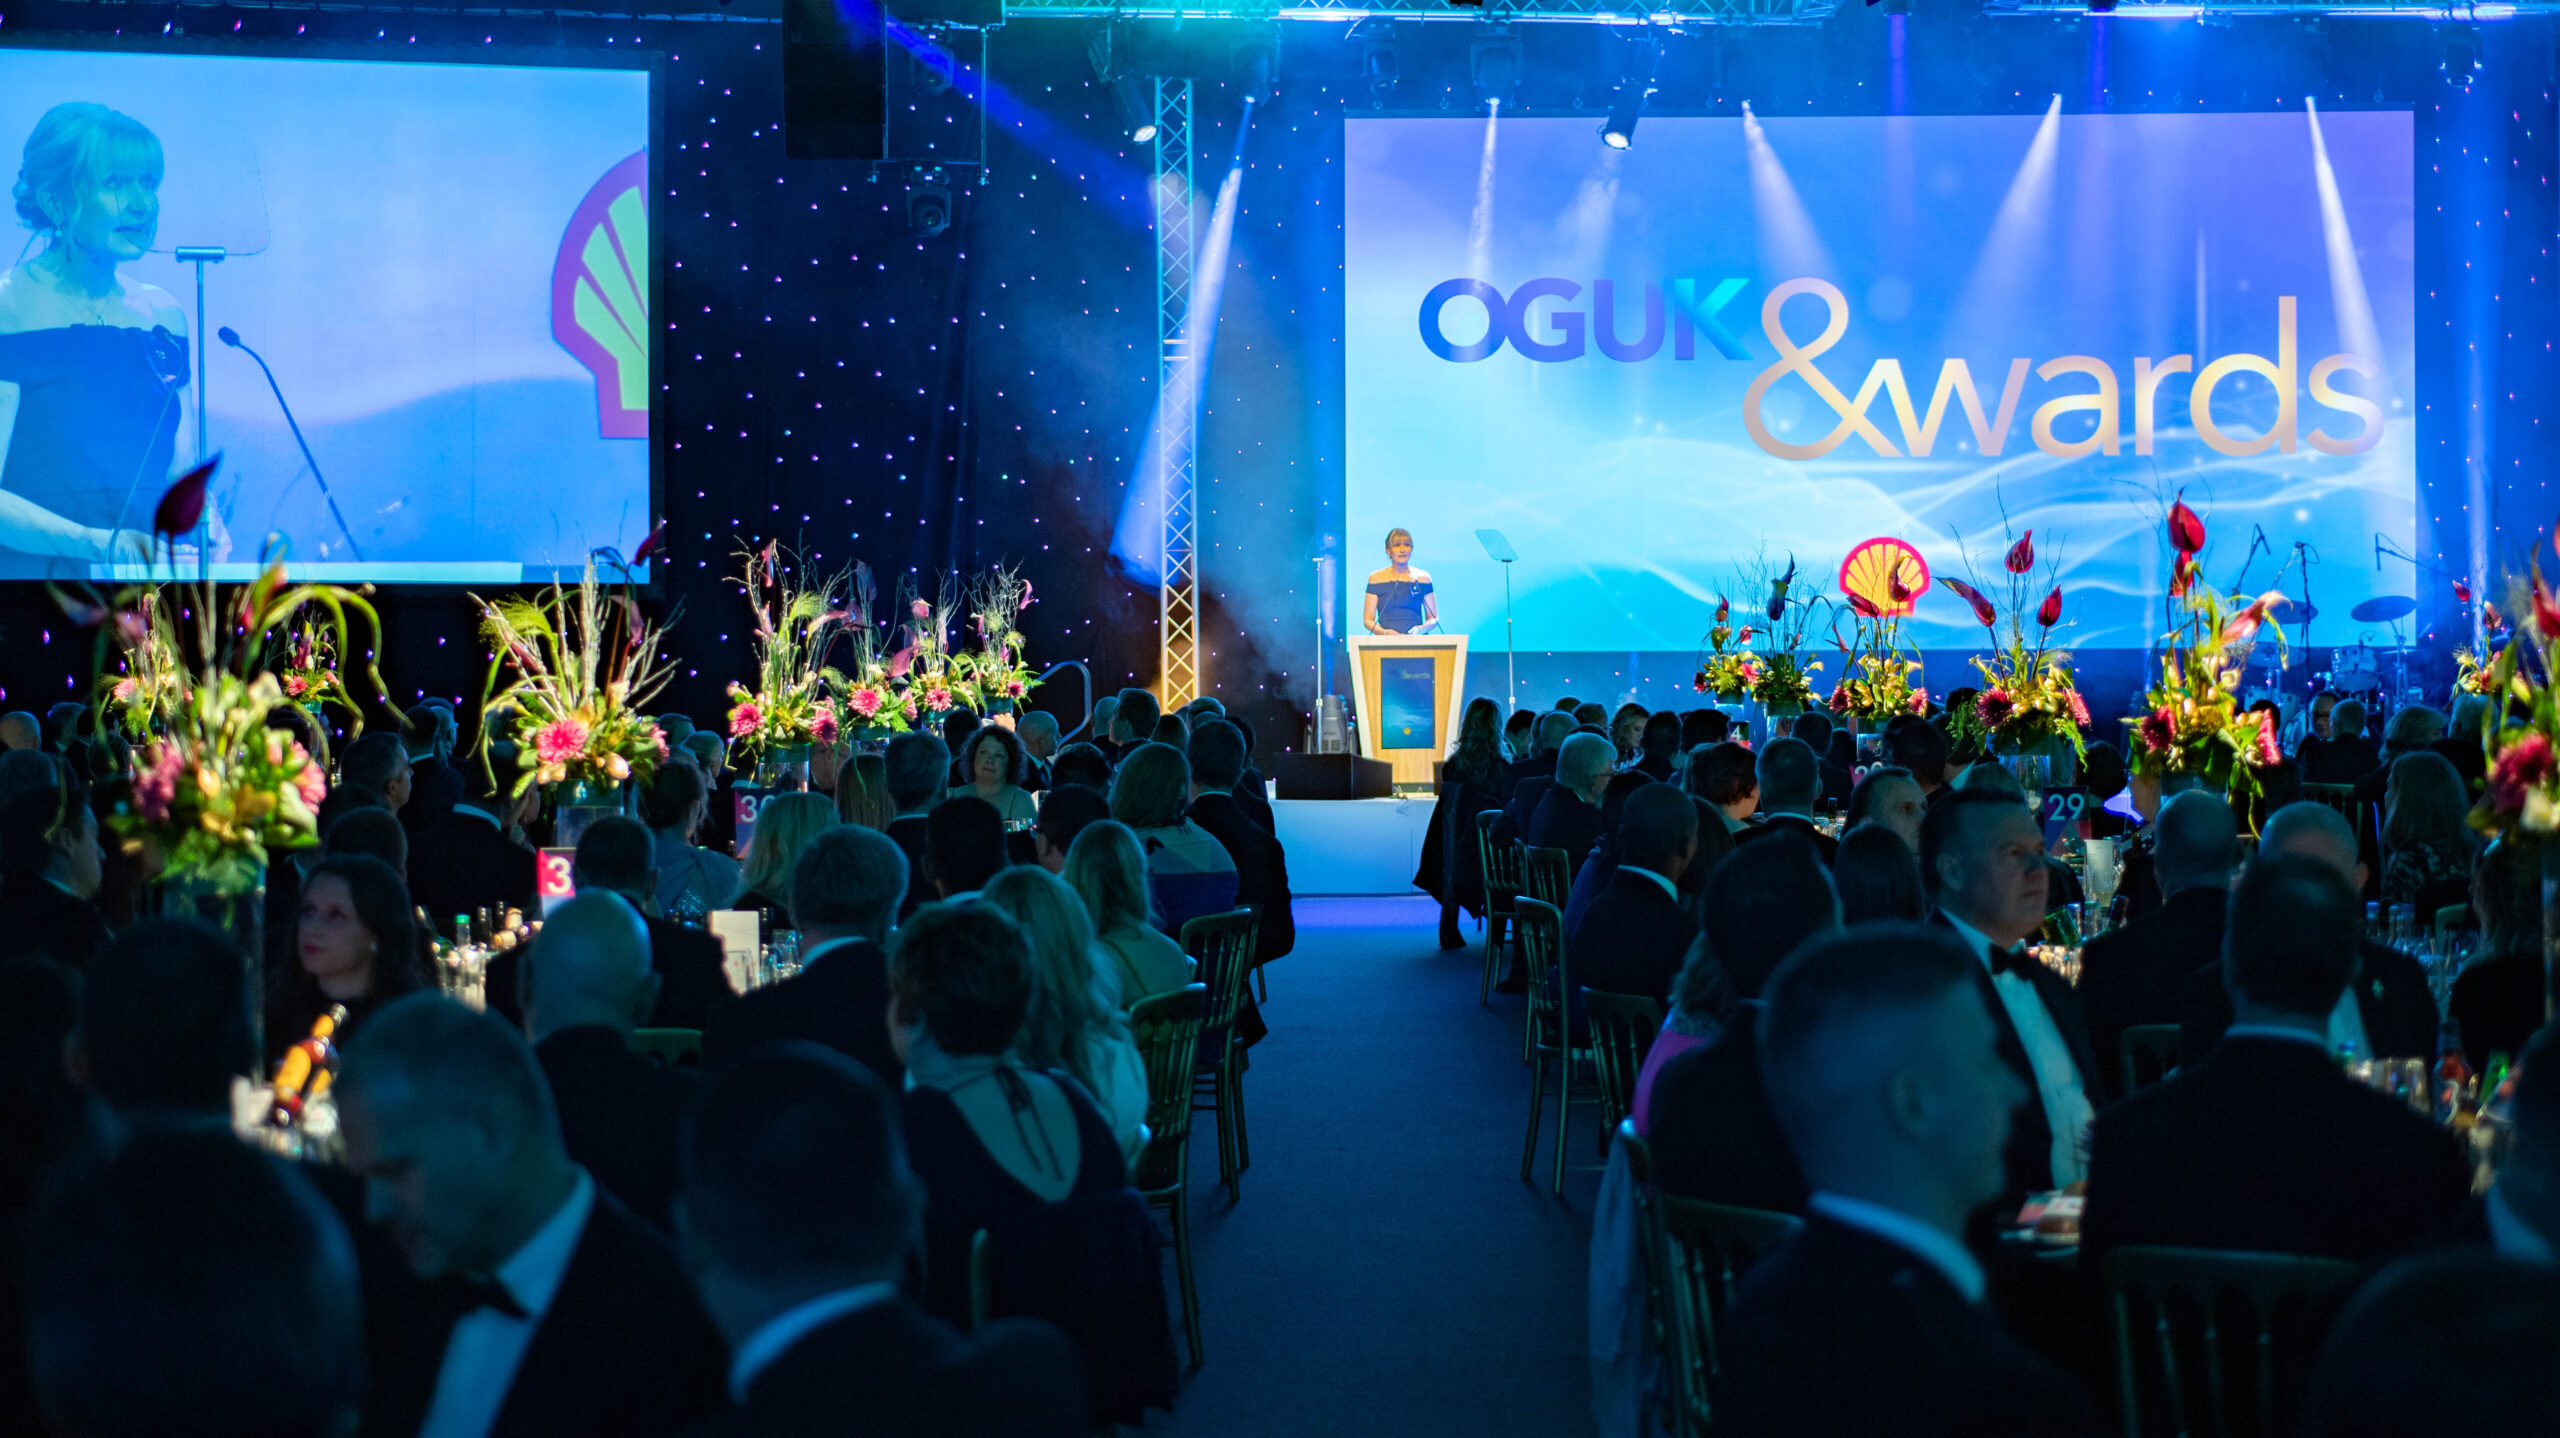 OGUK Awards 2022 - Save the Date